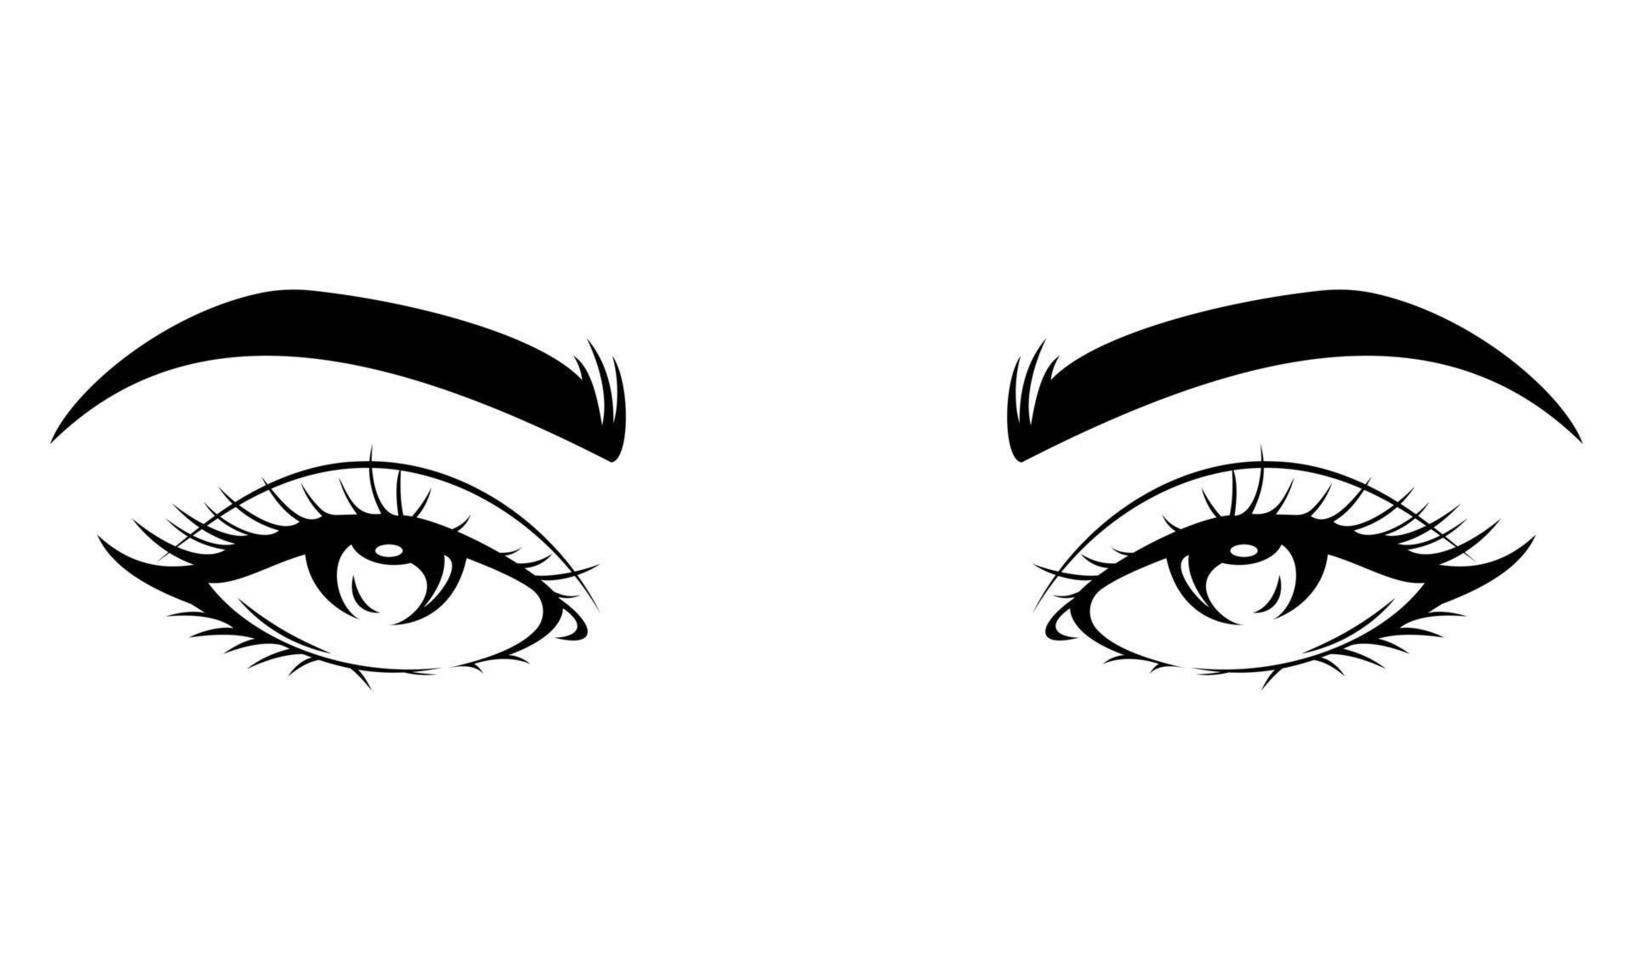 svart och vit flickans ögon, ögonfransar och ögonbryn - flickans ögon silhuett konst vektor